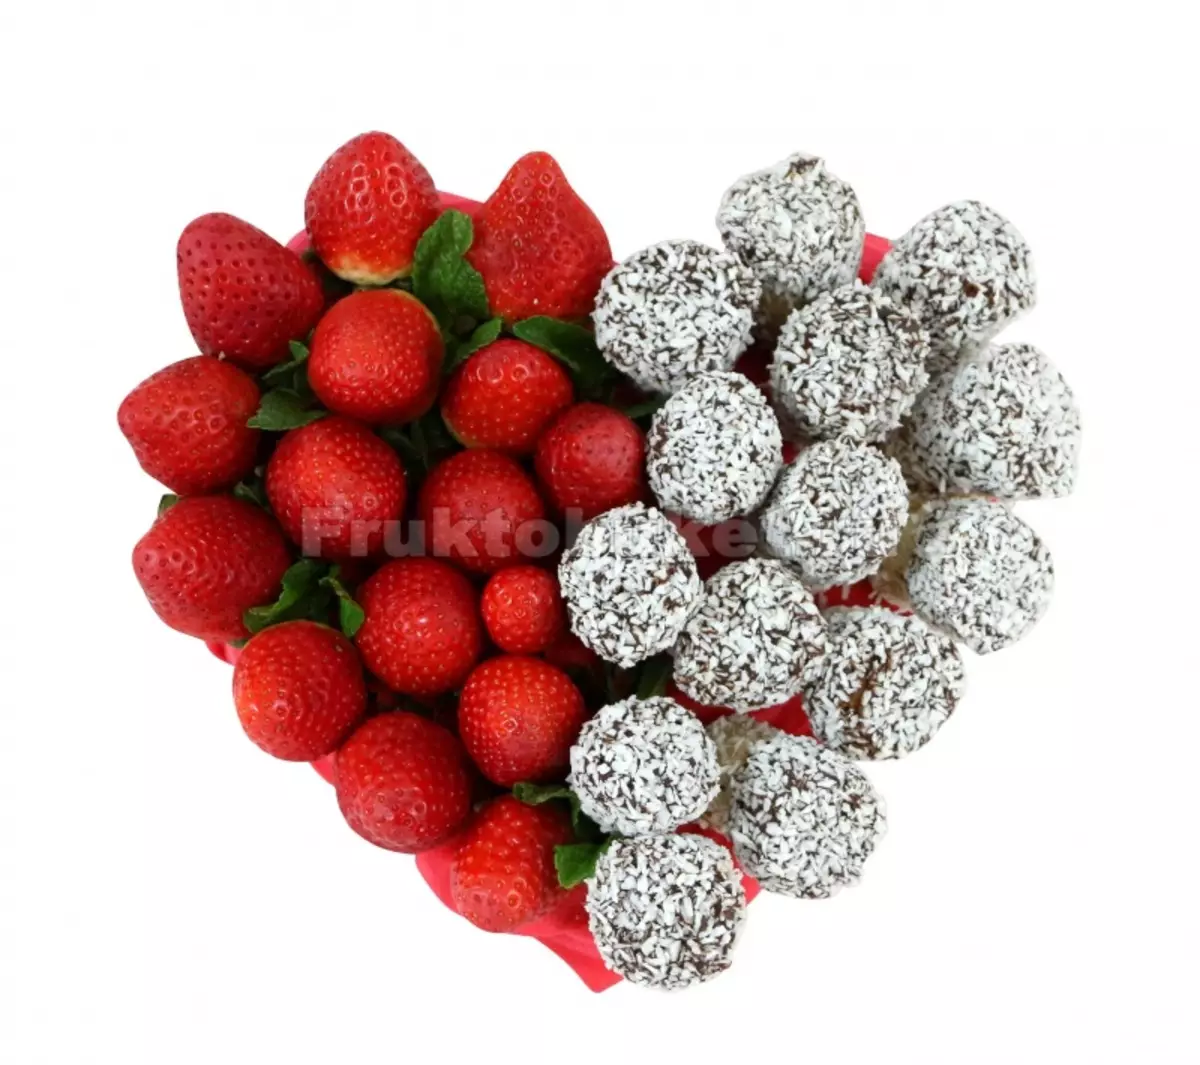 ផ្កានៃការ strawberry (36 រូបថត): របៀបដើម្បីធ្វើឱ្យ strawberry ក្នុងសូកូឡានៅក្នុងភួងនៃដៃរបស់អ្នកជាការបោះជំហានដោយជំហាន? តើធ្វើដូចម្តេចដើម្បីធ្វើឱ្យភួង strawberry មួយនៃ strawberries និងពណ៍? 26653_12